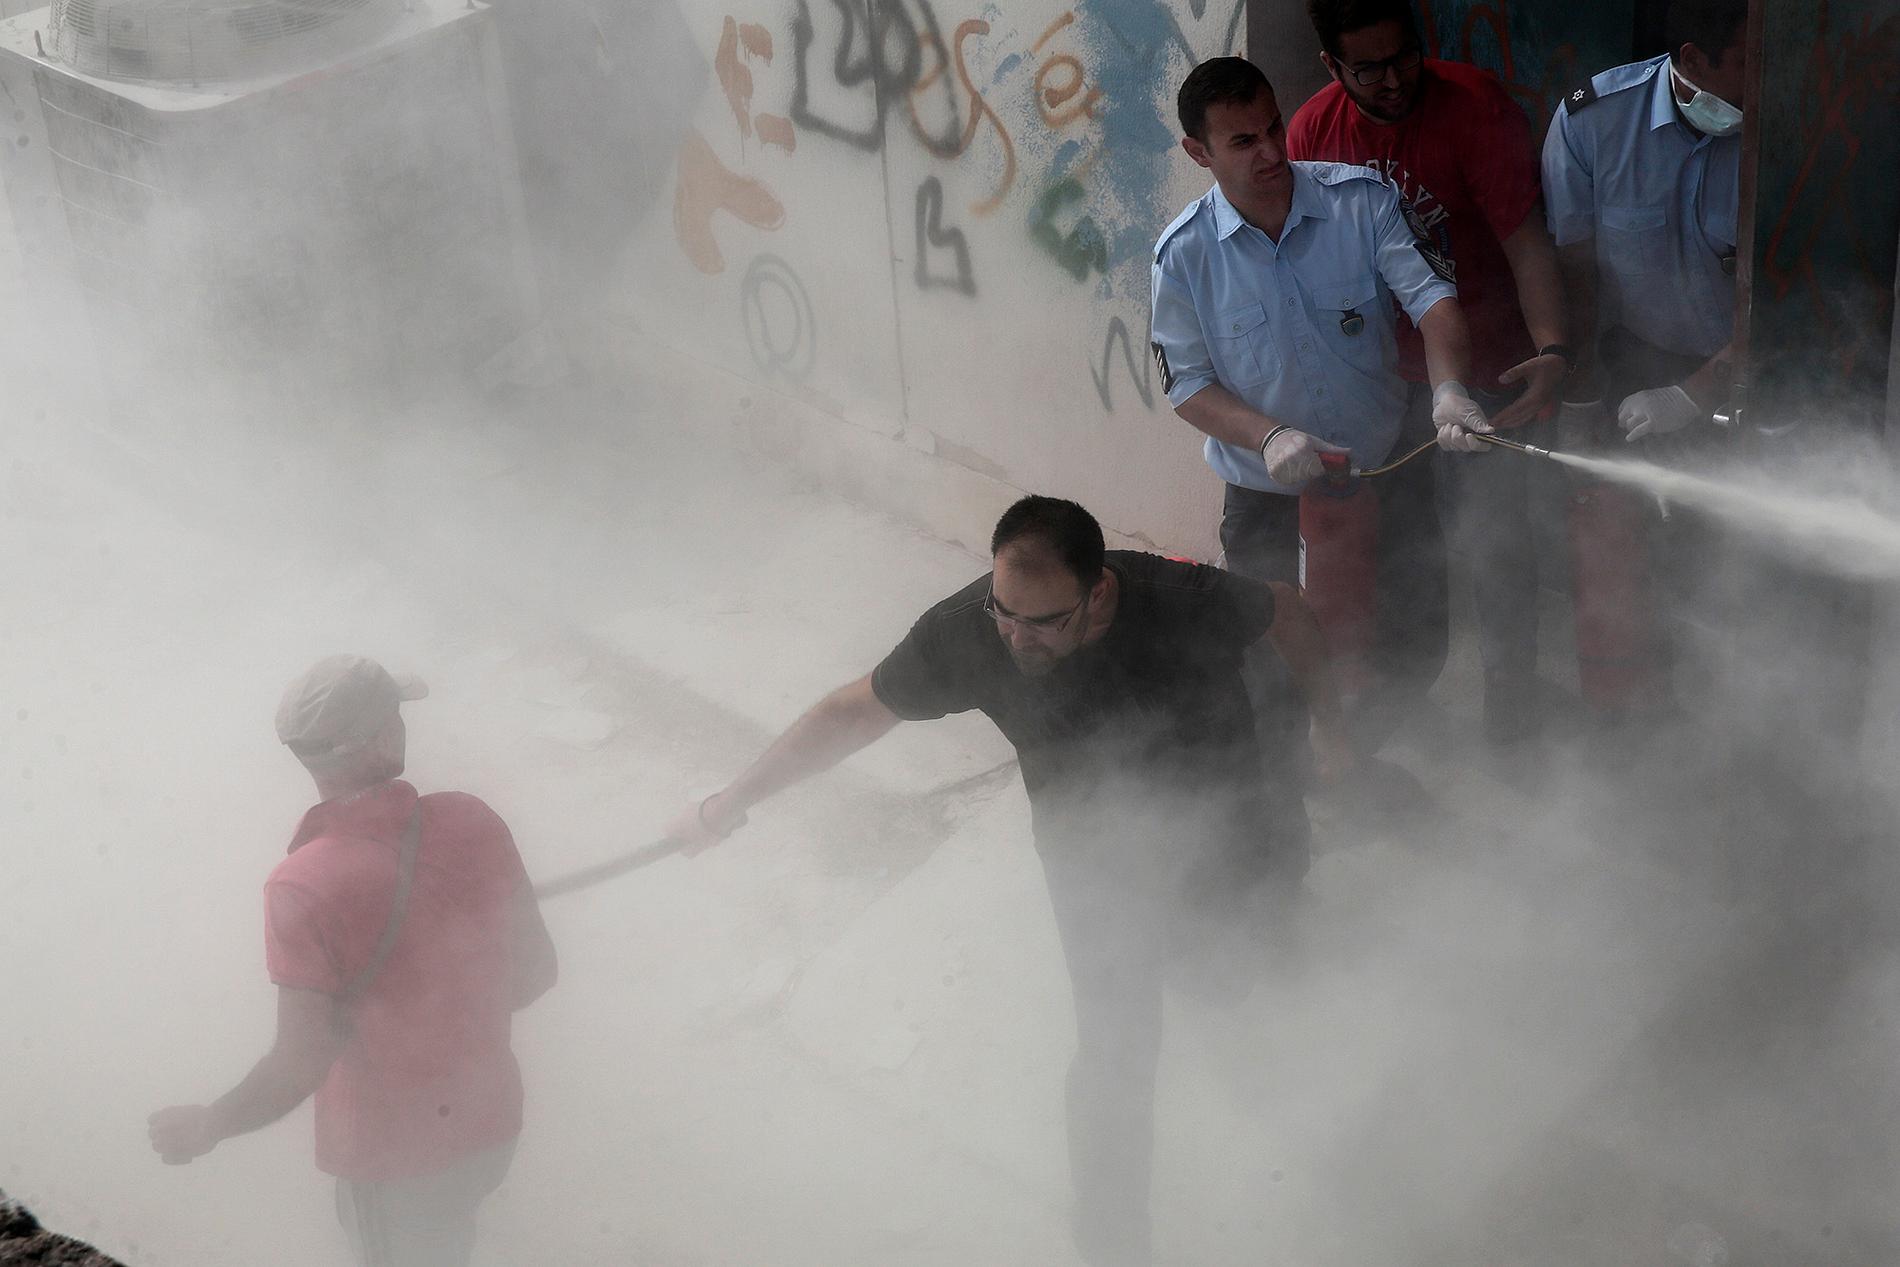 Polisen sprutar med  brandsläckare och använder batong mot flyktingar på fotbollsstadium på kos, Grekland.